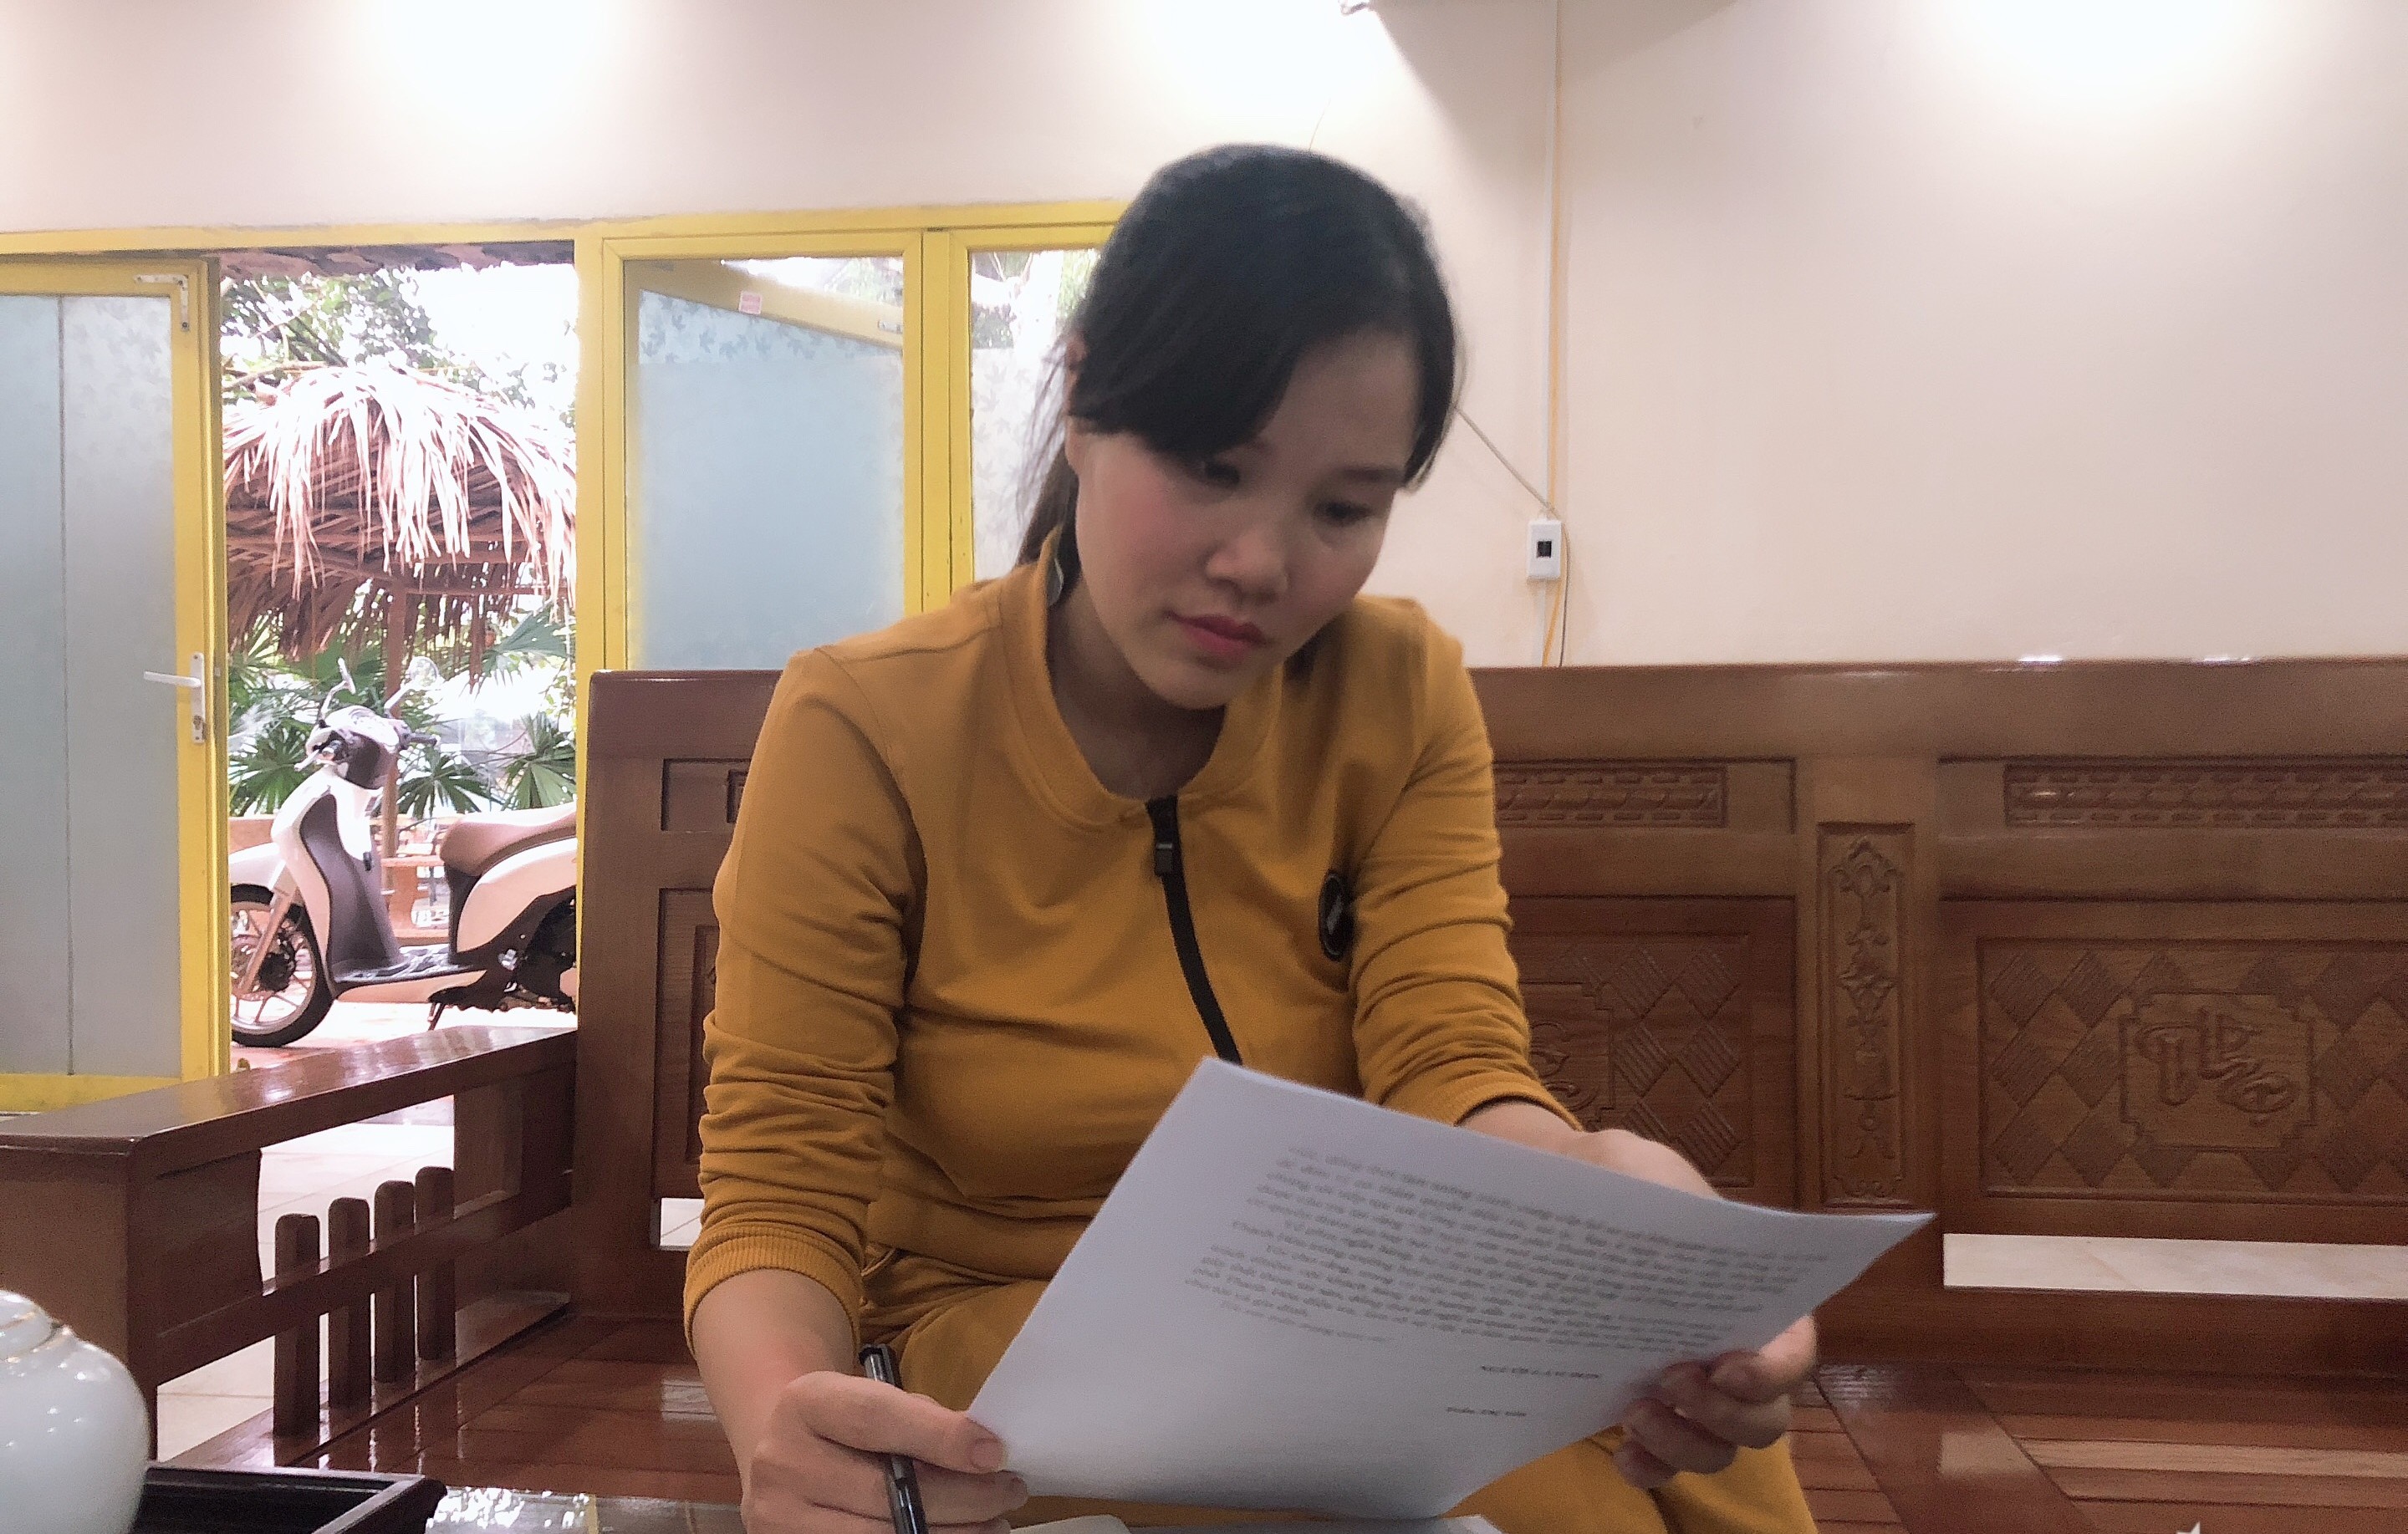 Chị Trần Thị Ngọc, chủ cửa hàng nội thất Ngọc Dũng. Ảnh của An Nguyên.